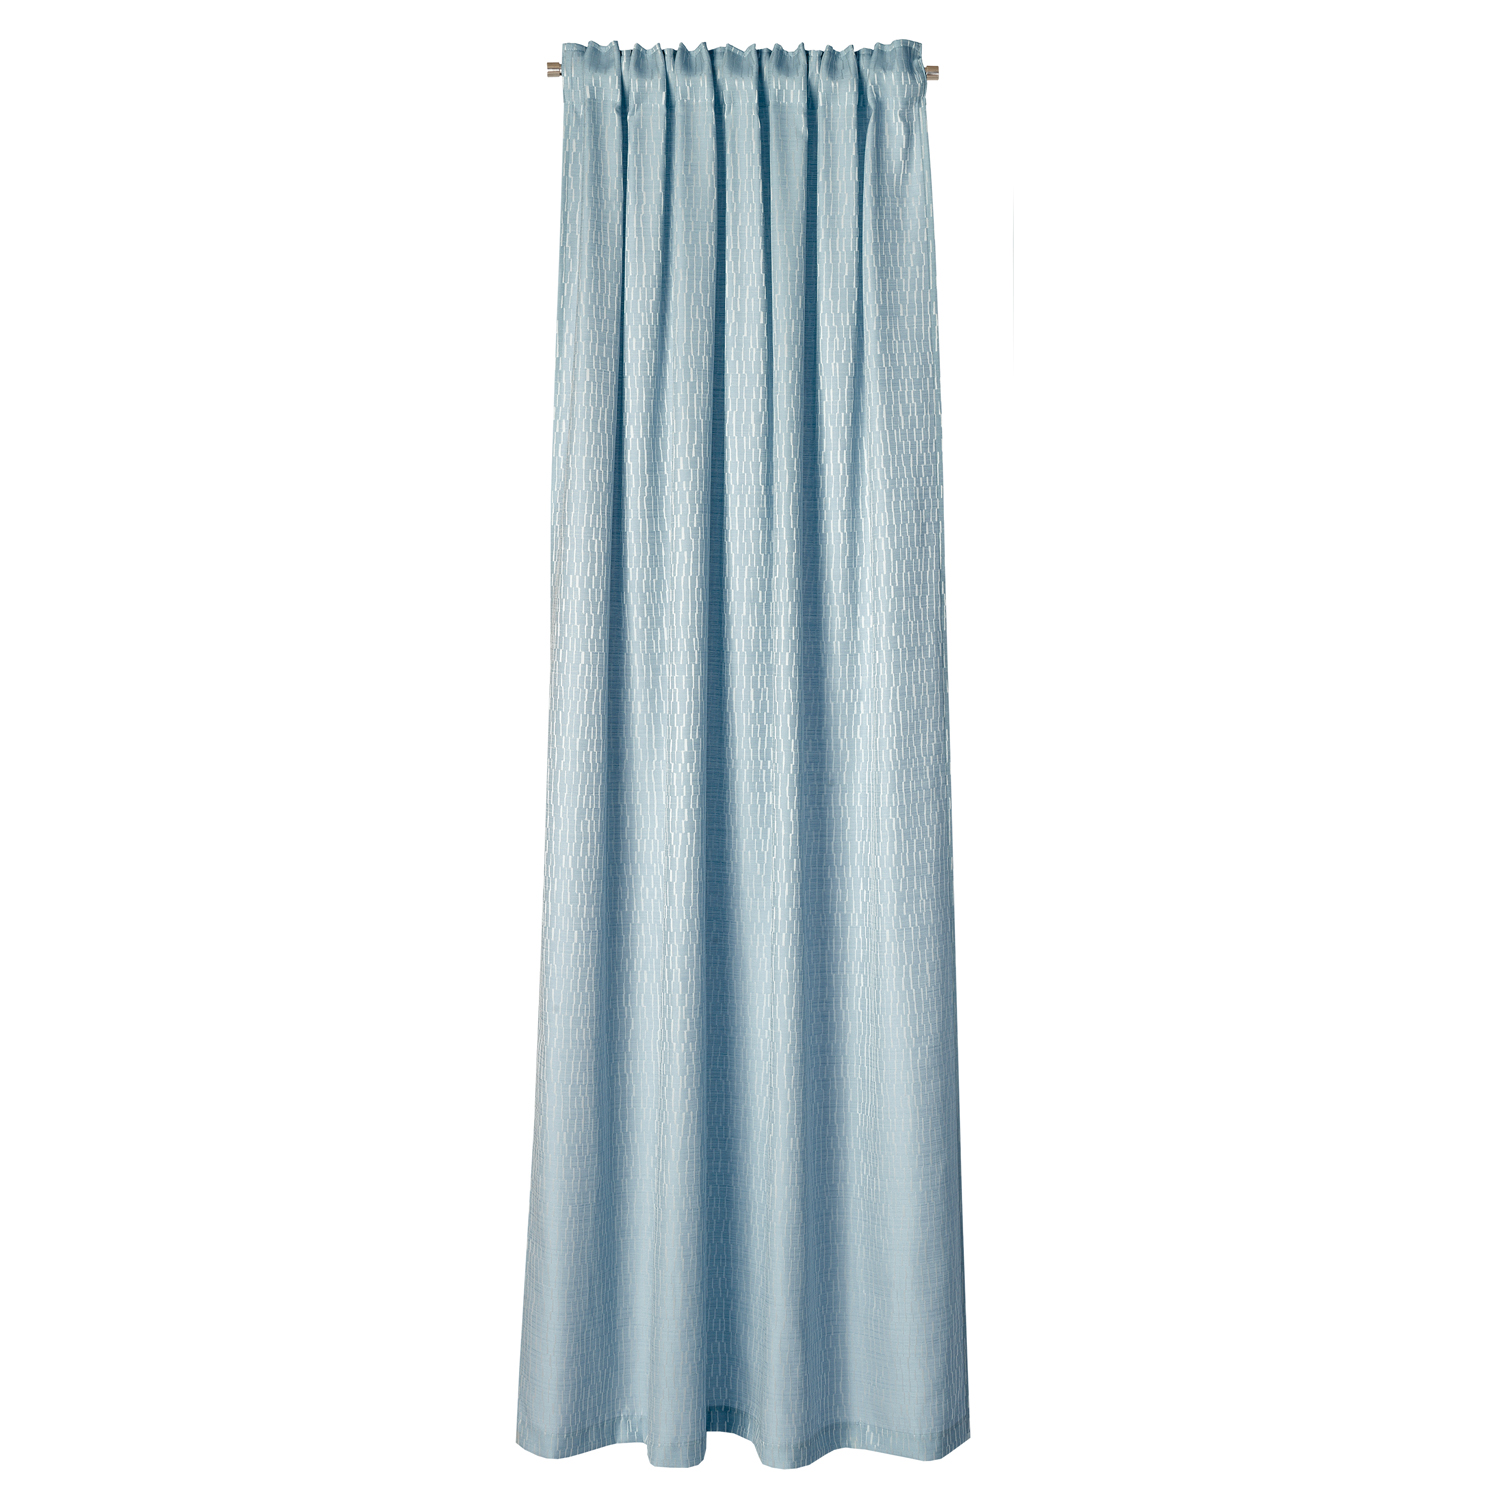 NEUTEX MESSINA Vorhang eisblau Schal mit Schlaufenband blickdicht